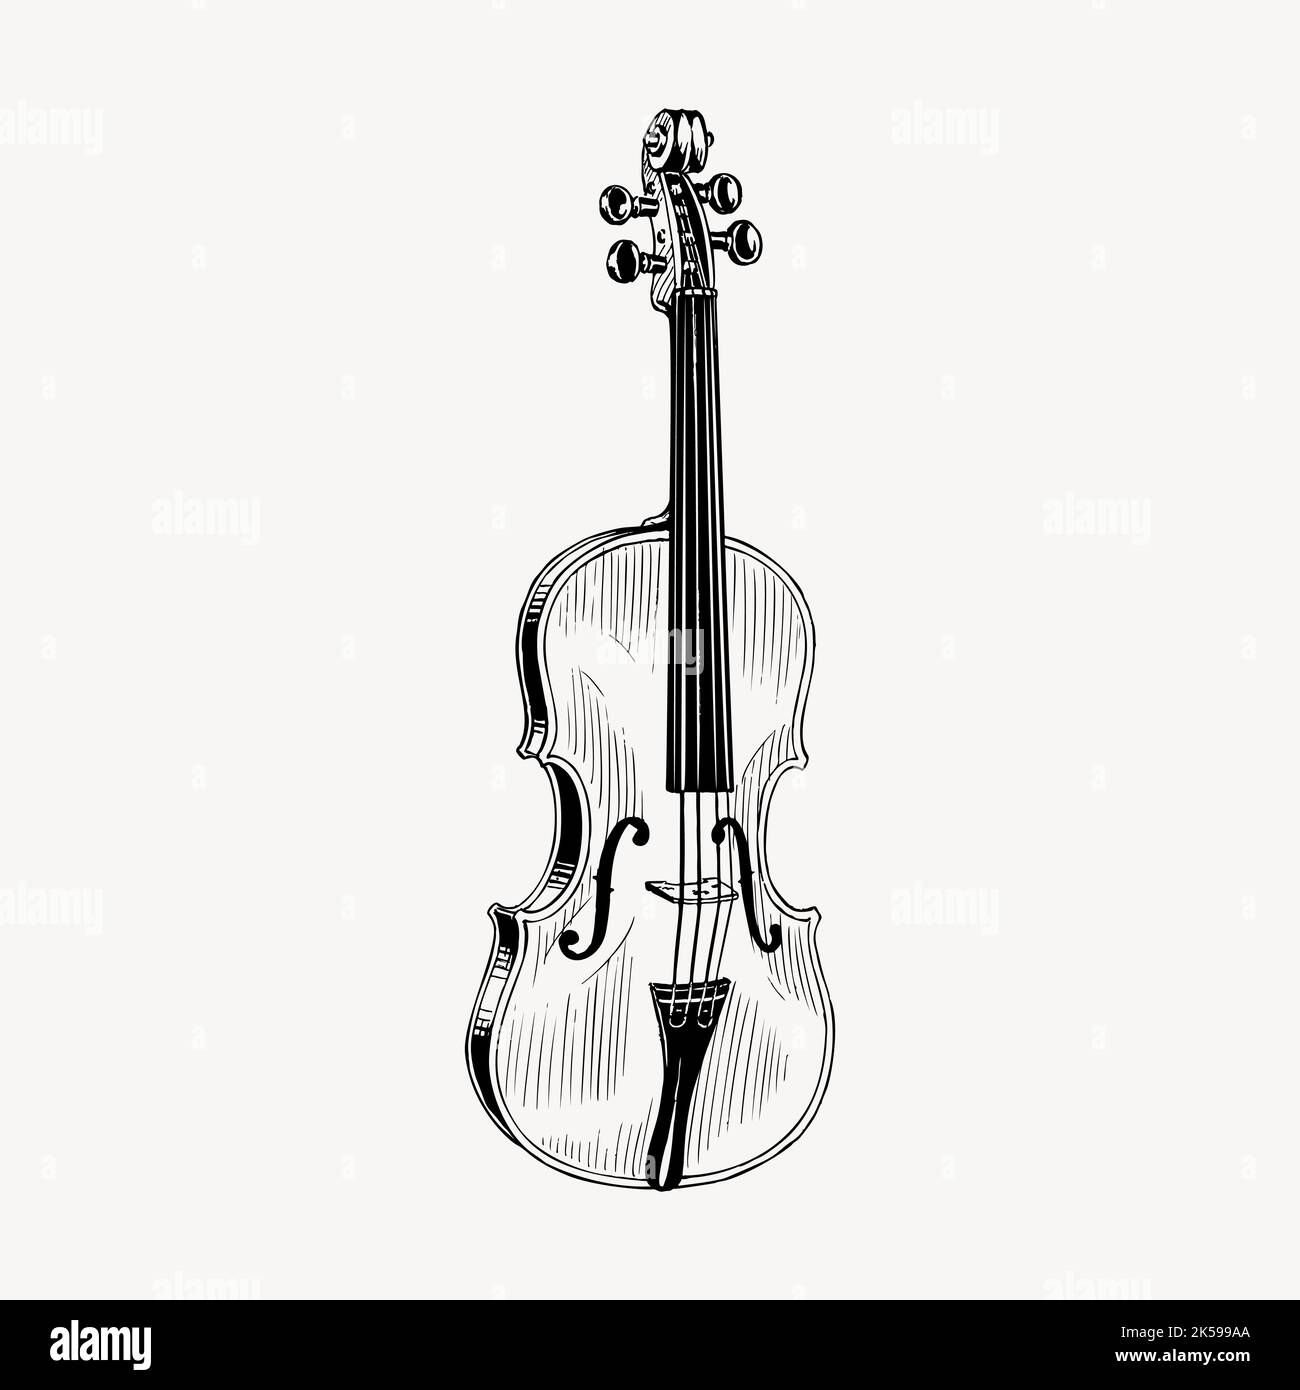 Dessin de violon, vecteur d'illustration d'instruments de musique d'époque. Illustration de Vecteur